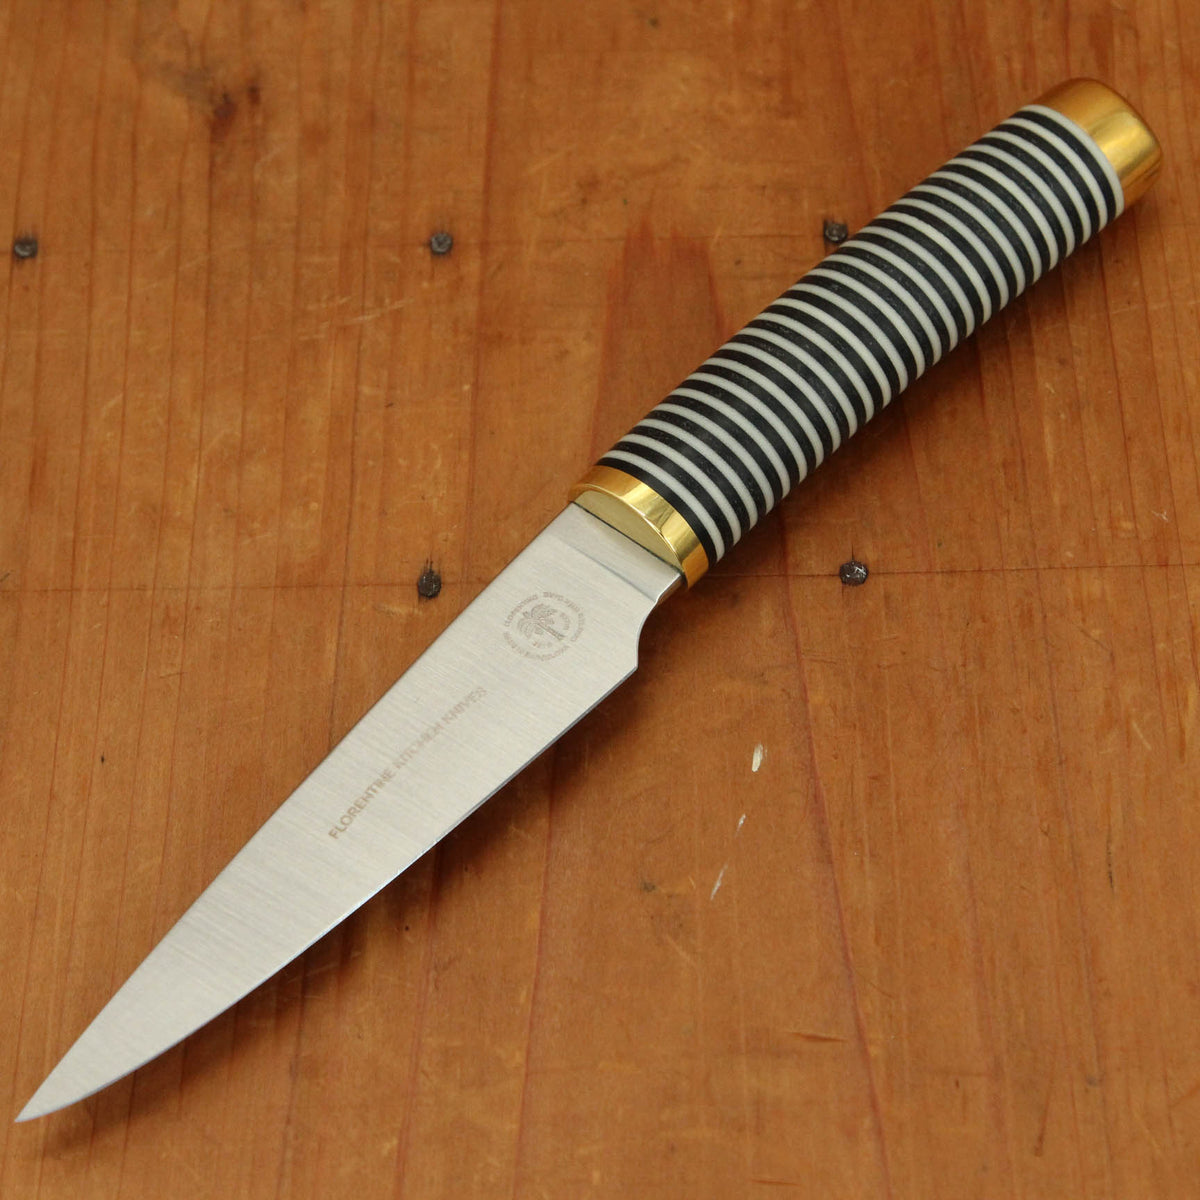 Left-Handed Paring Knife